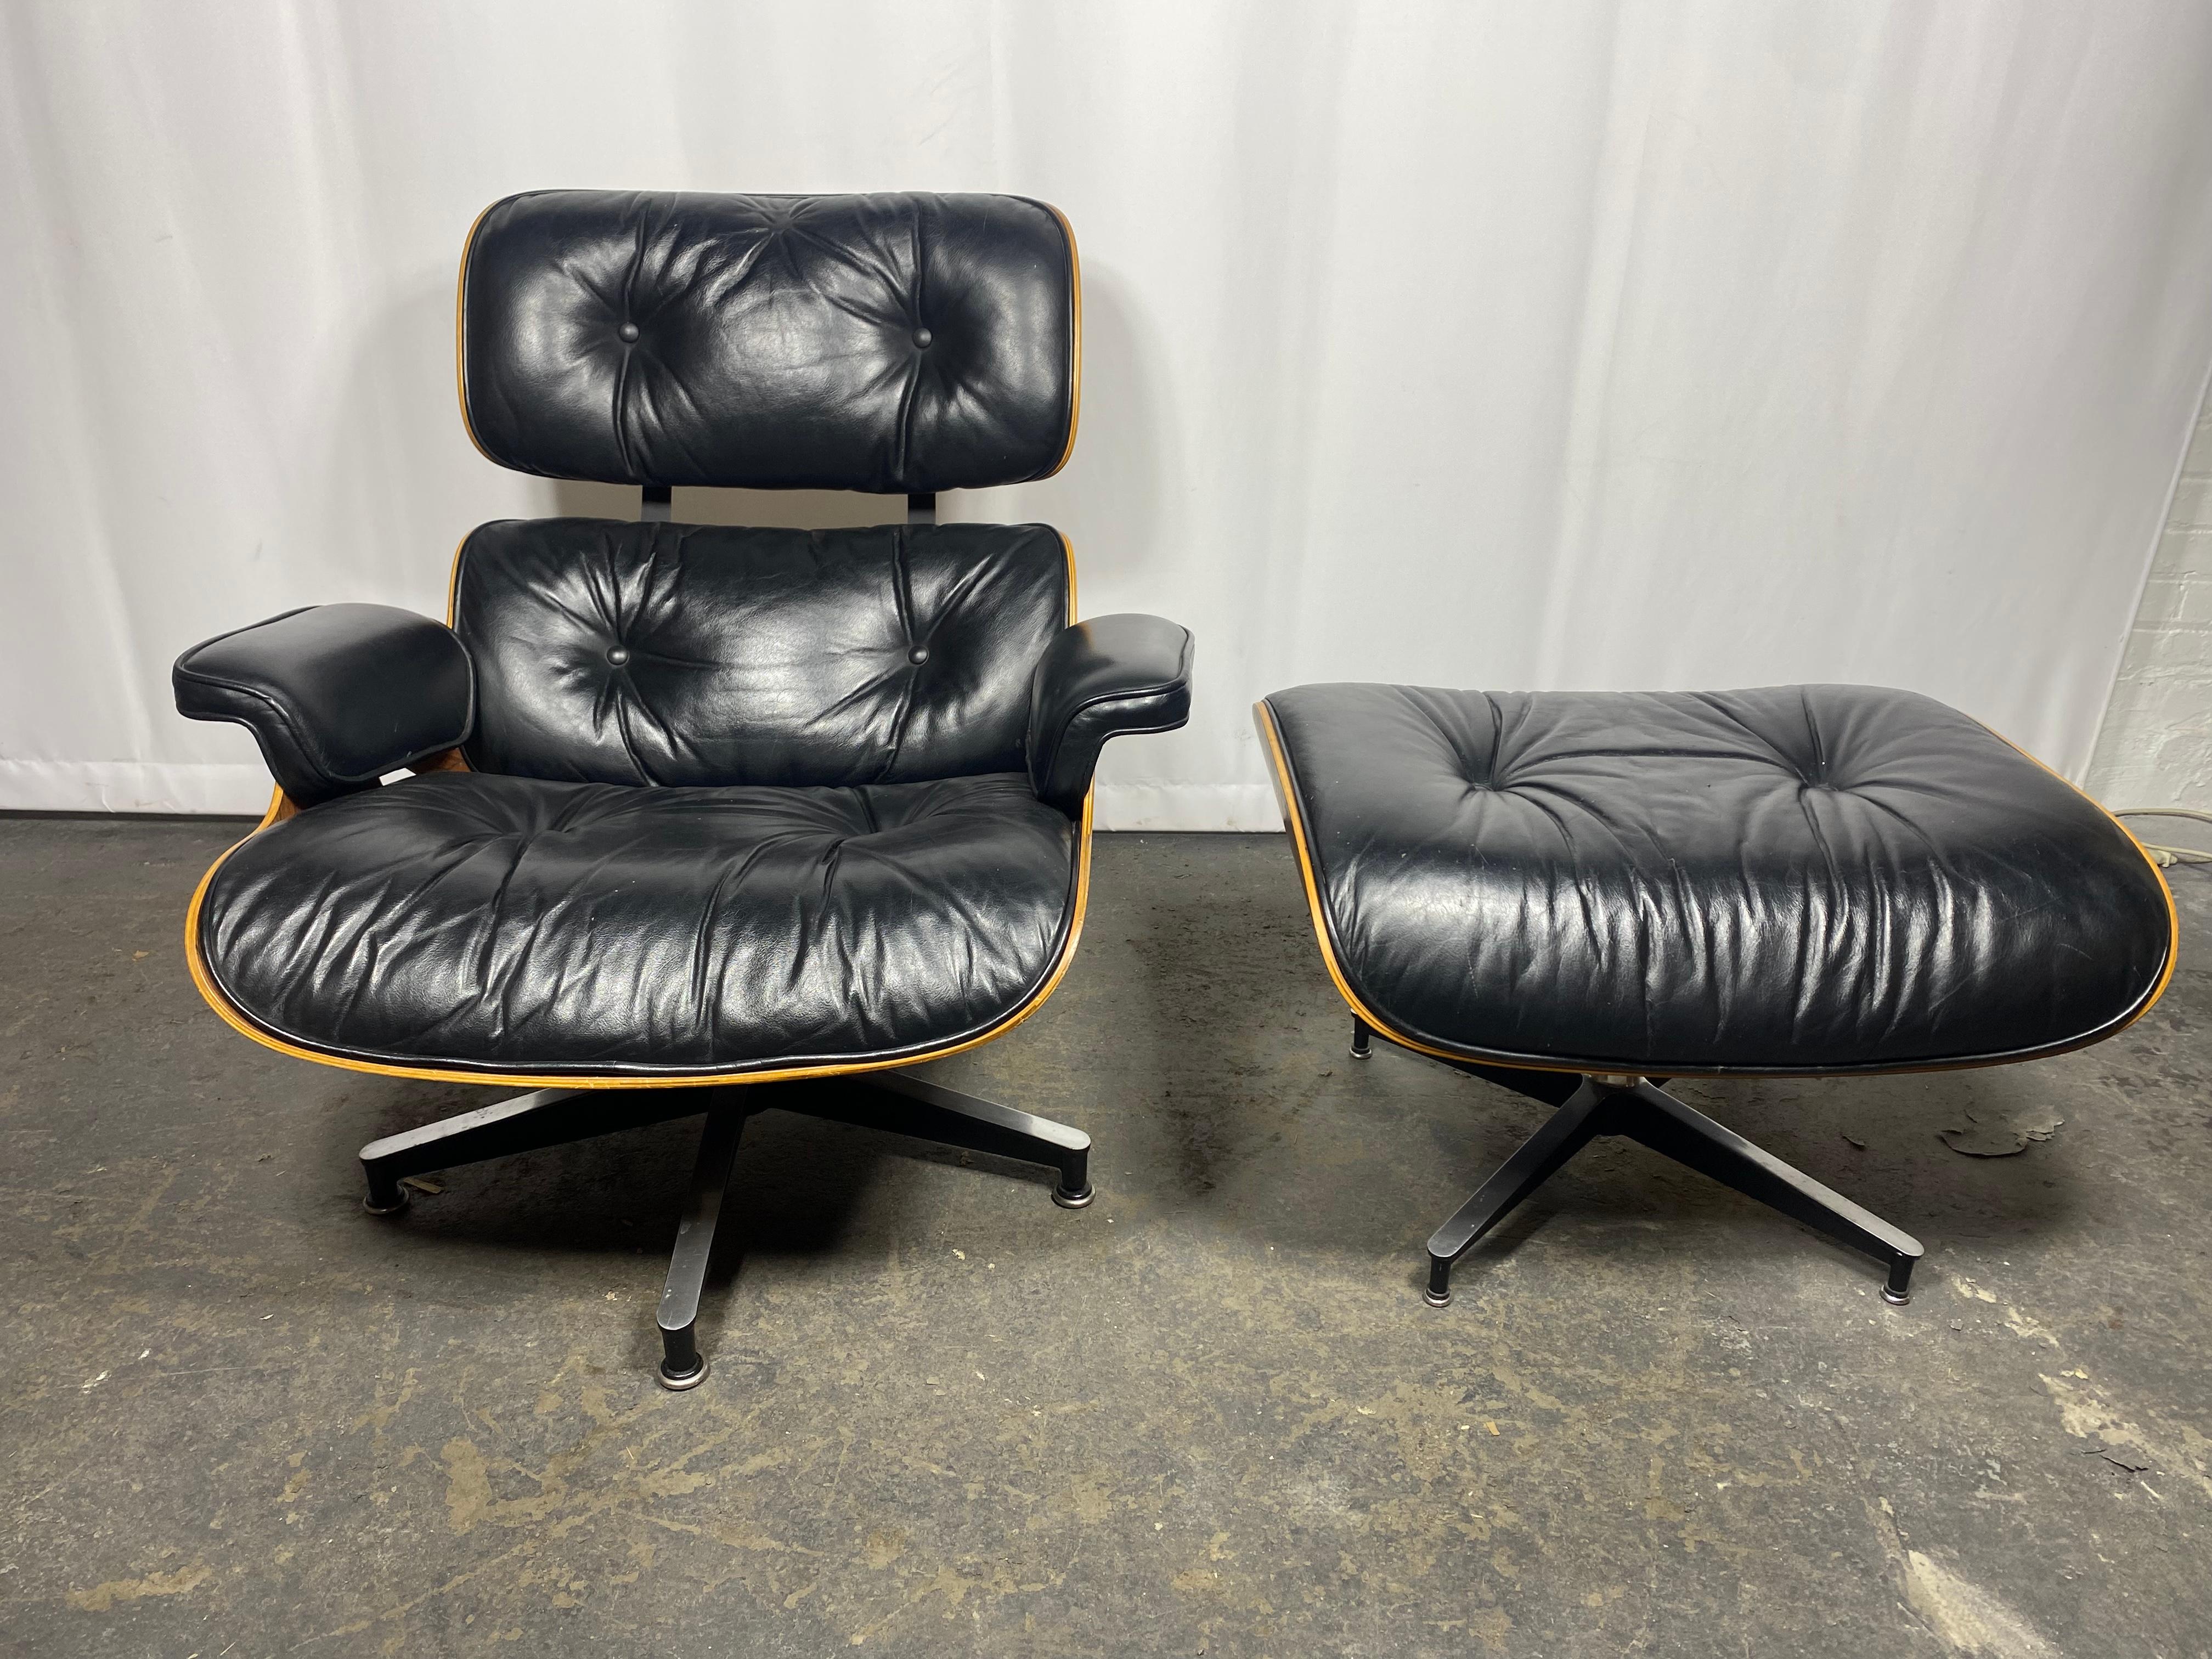 L'emblématique chaise longue 670 et l'ottoman 671, conçus par Charles et Ray Eames pour Herman Miller. Un design luxueusement doux et confortable. Le cadre met en valeur la magnifique sélection de palissandre brésilien, au grain riche et profond. .